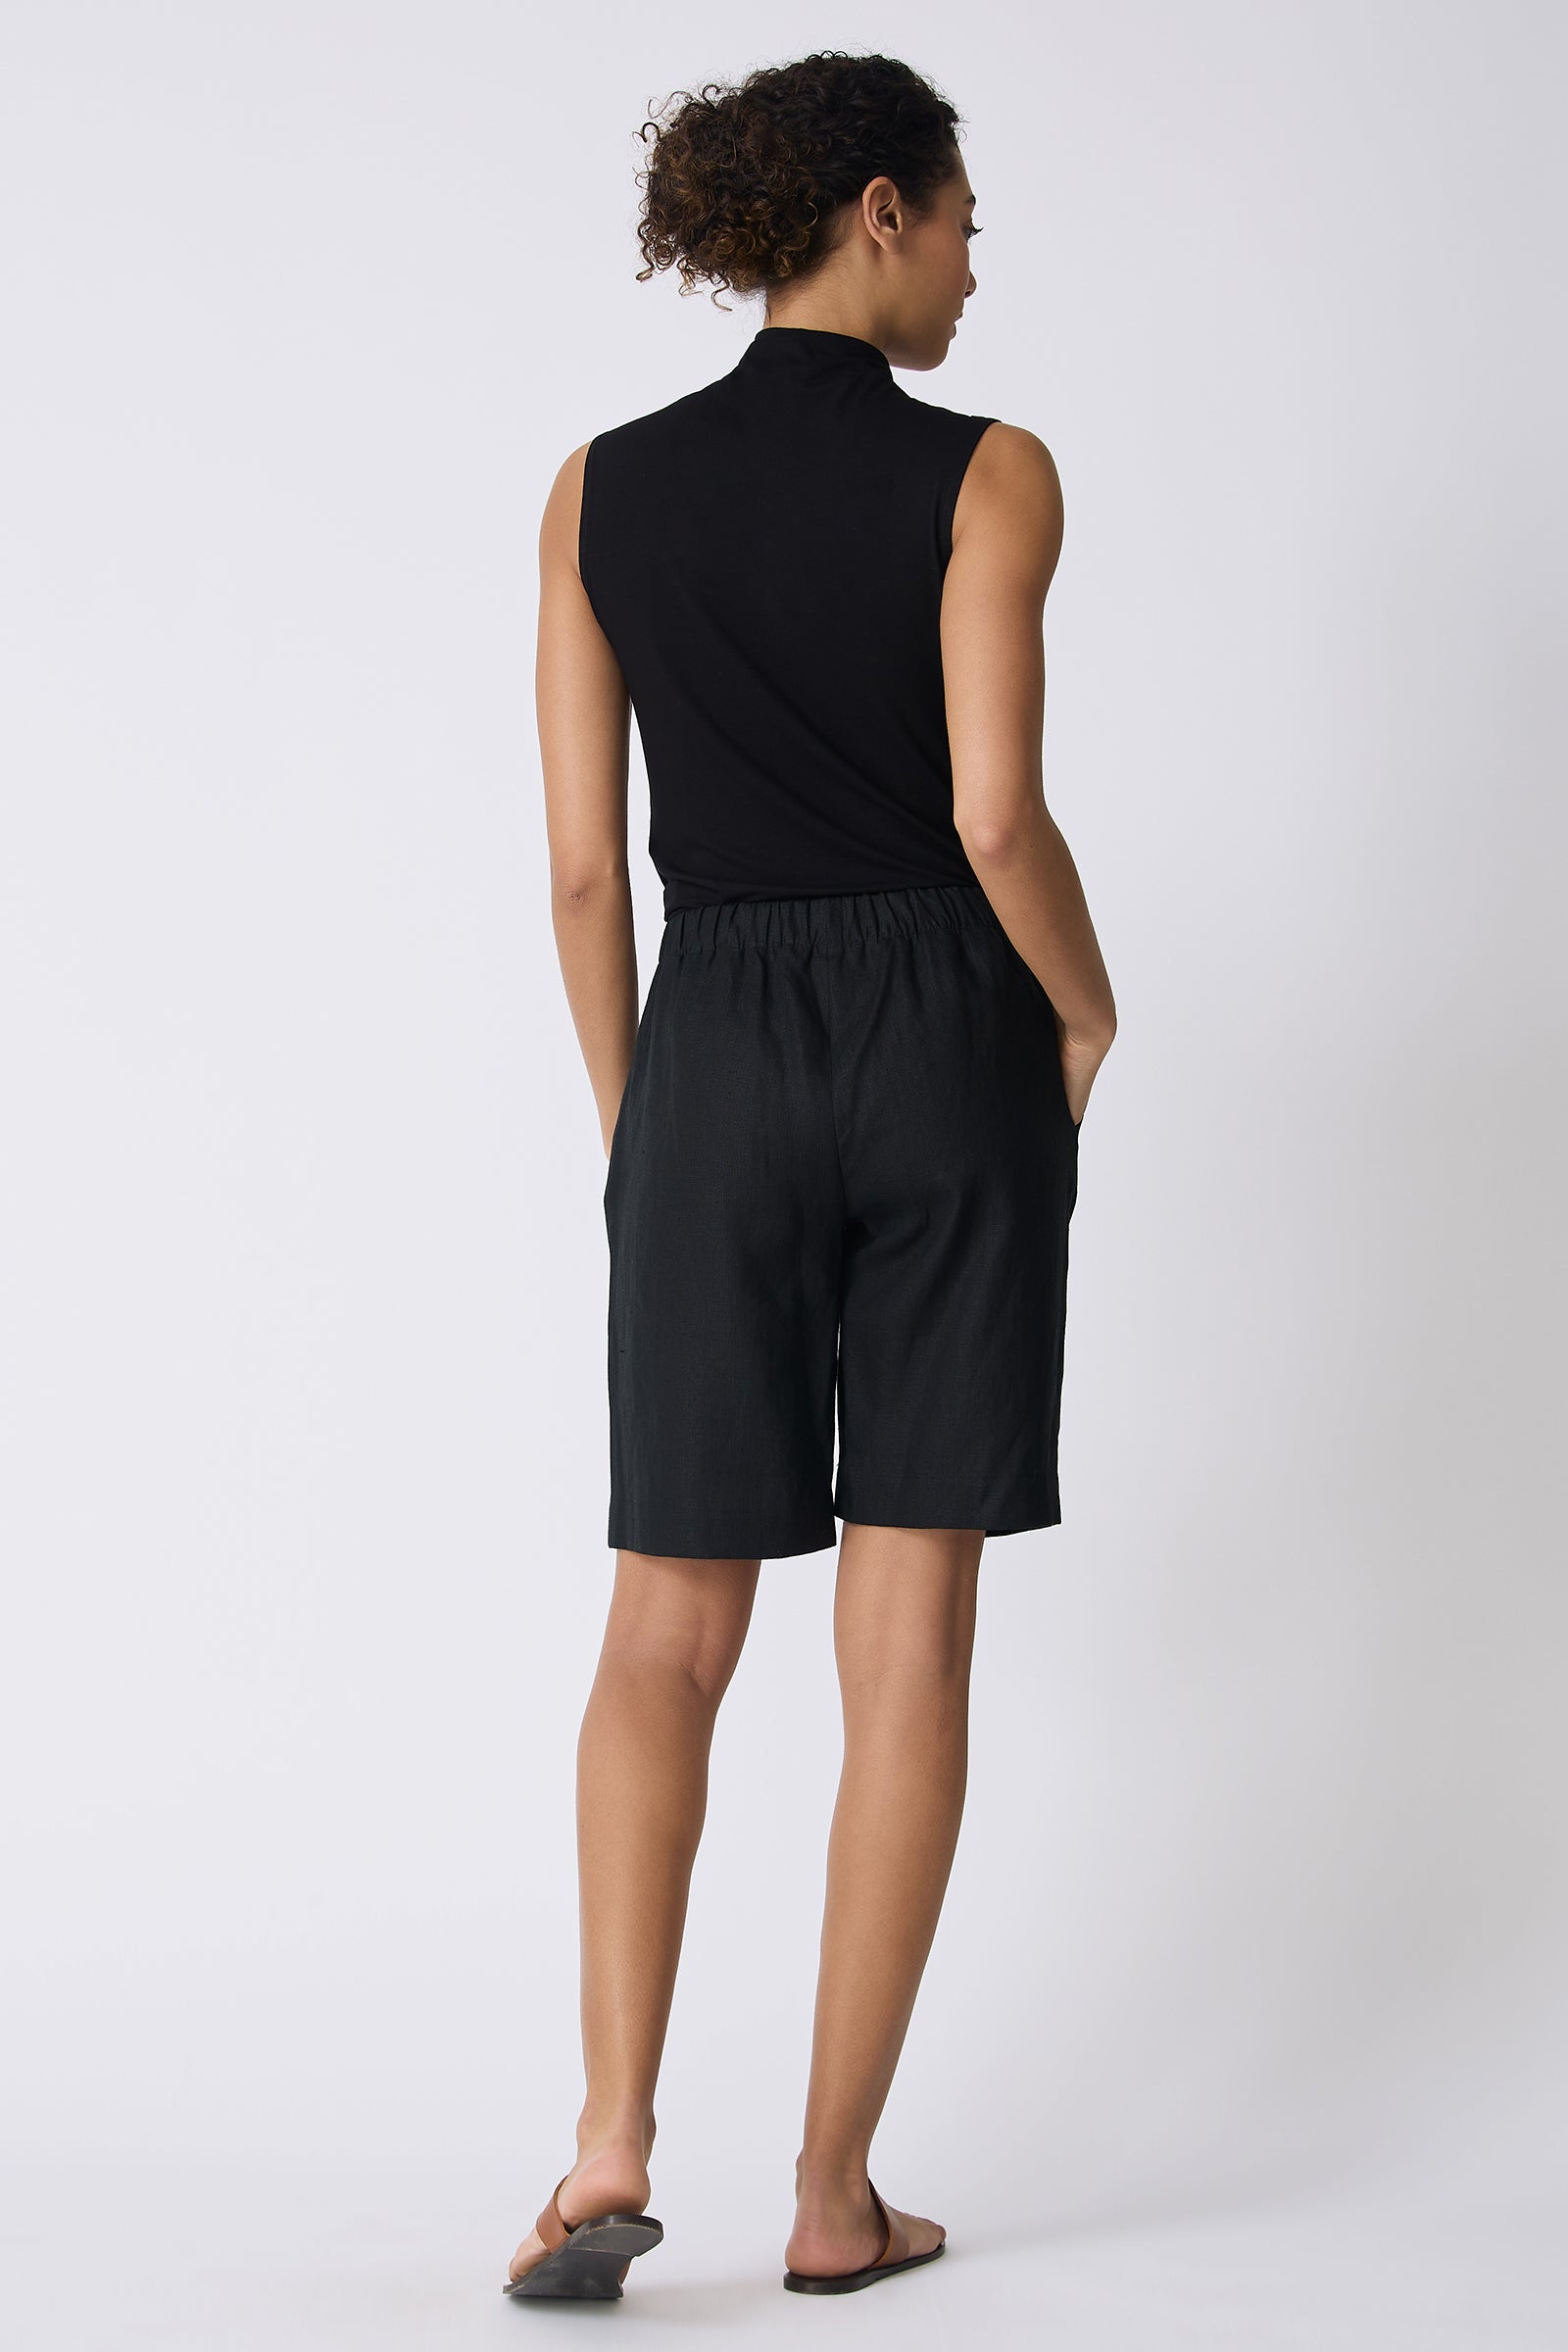 Kal Rieman Bahama Short in Black Linen on model full back view